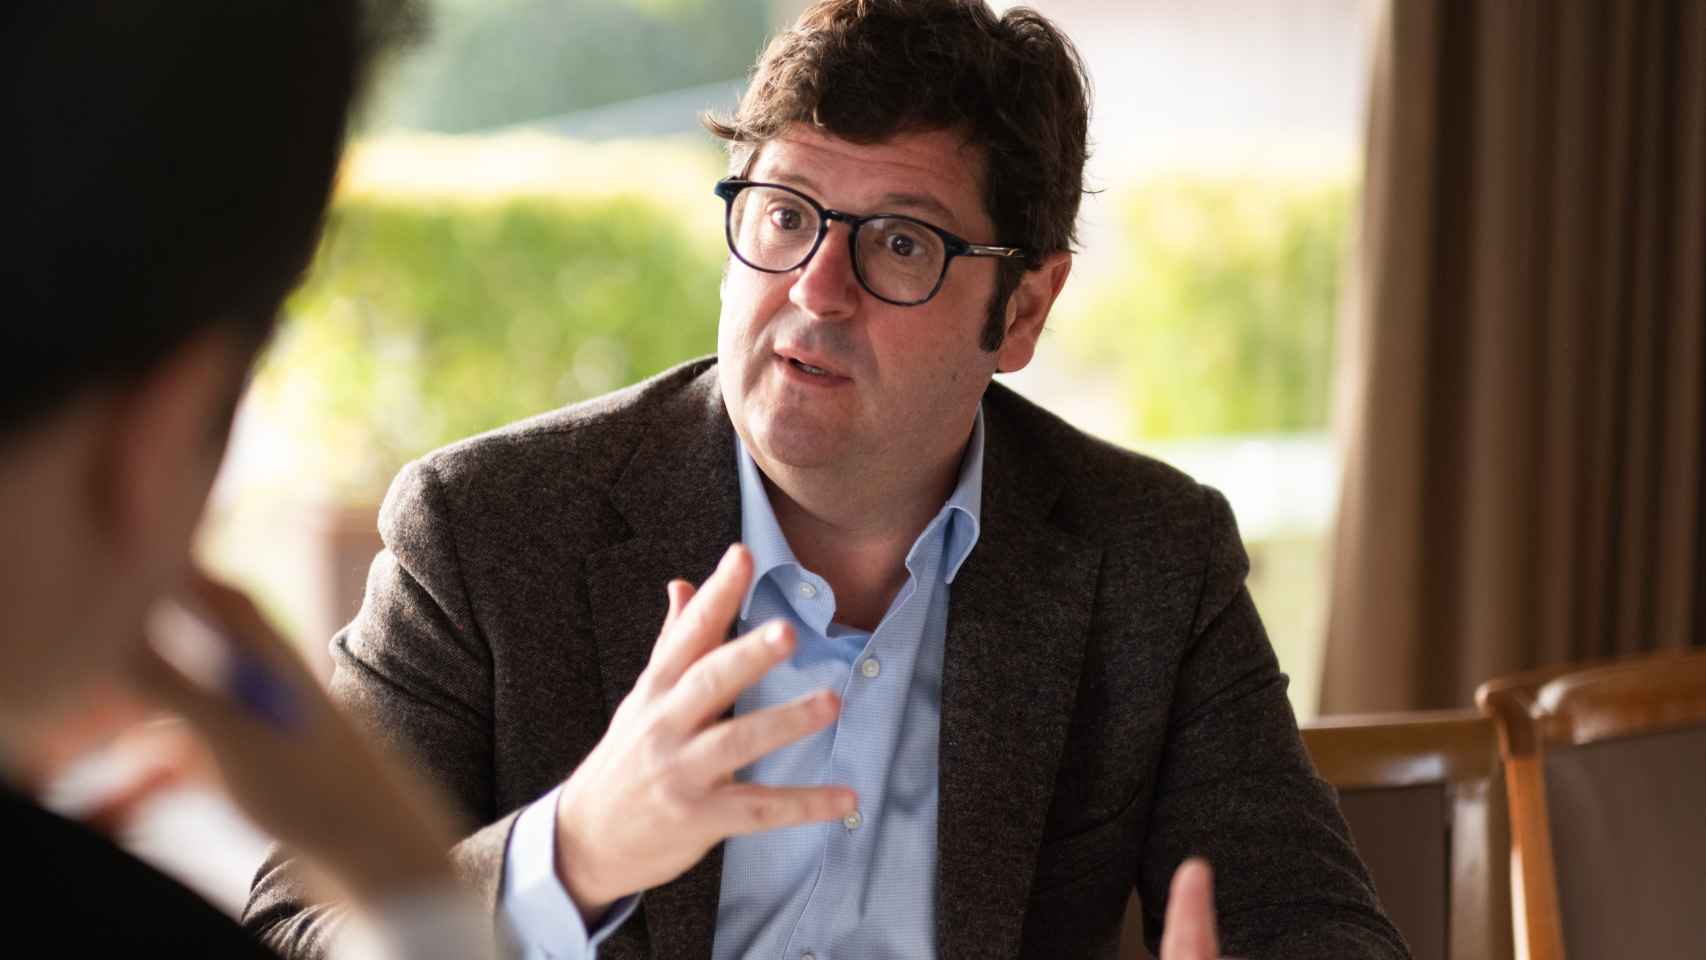 Entrevista a Pablo Sánchez Marquiegui, candidato a la presidencia del Real Club de Polo de Barcelona